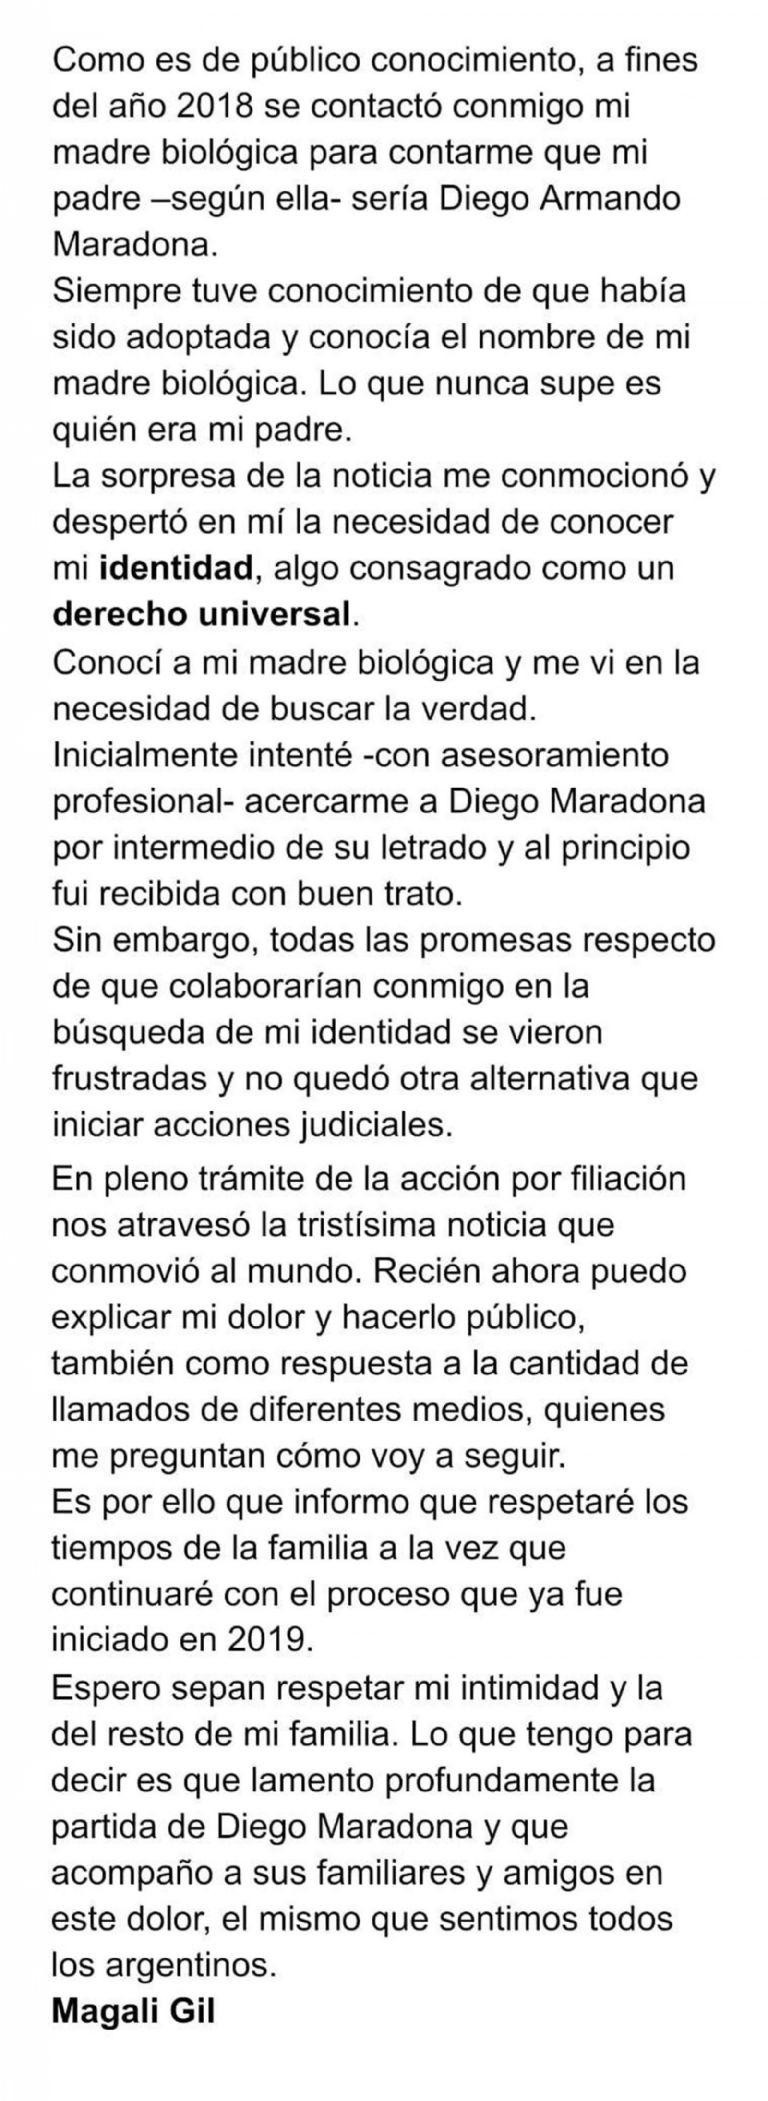 Comunicado de Magalí Gil la supuesta hija de Maradona